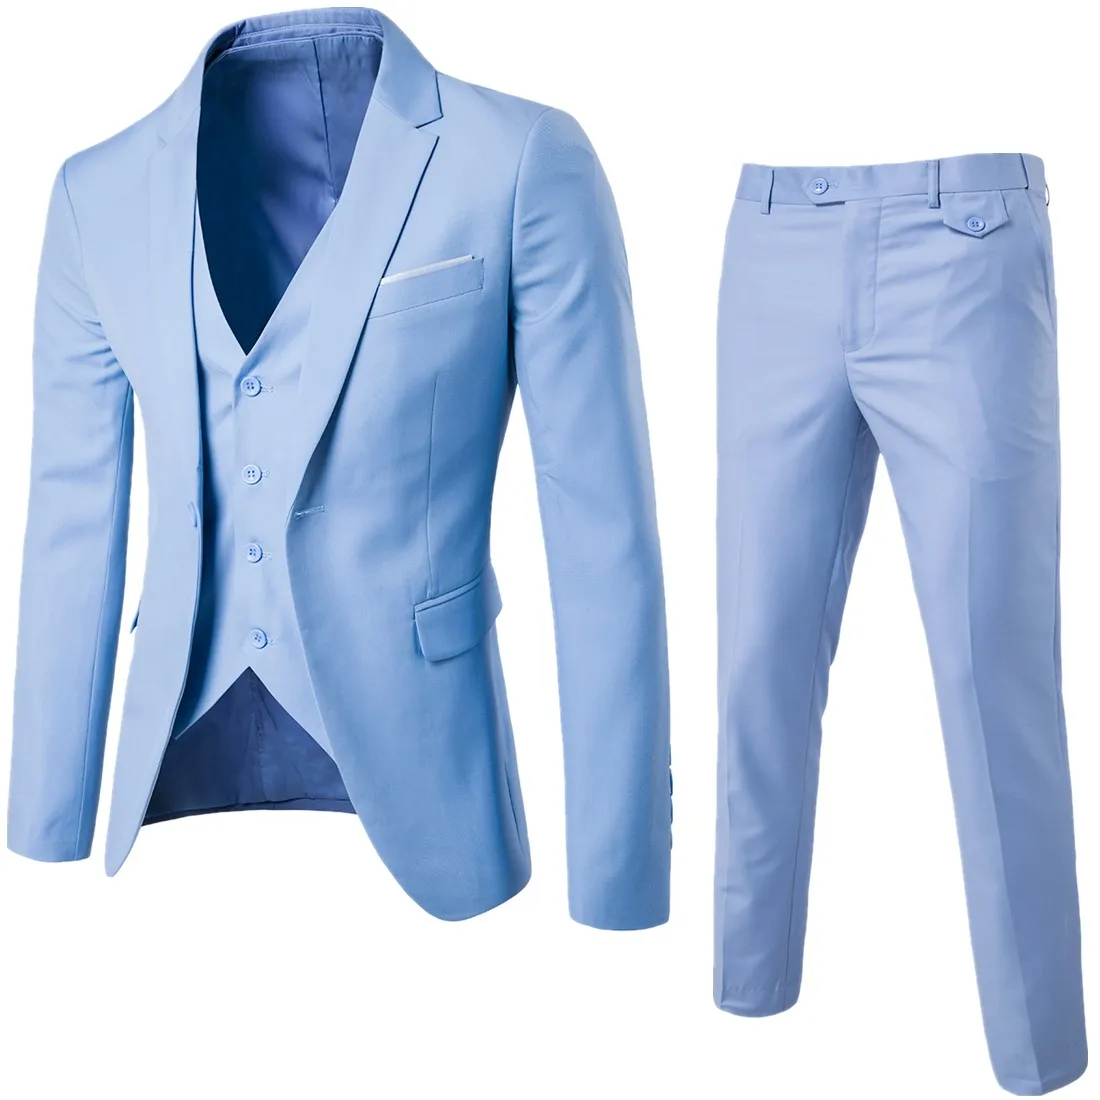 Куртка+ брюки+ жилет) Роскошные мужские повседневные Свадебные смокинги мужская одежда мужской тонкий костюм модные мужские деловые вечерние костюмы - Цвет: sky blue 3-pcs set